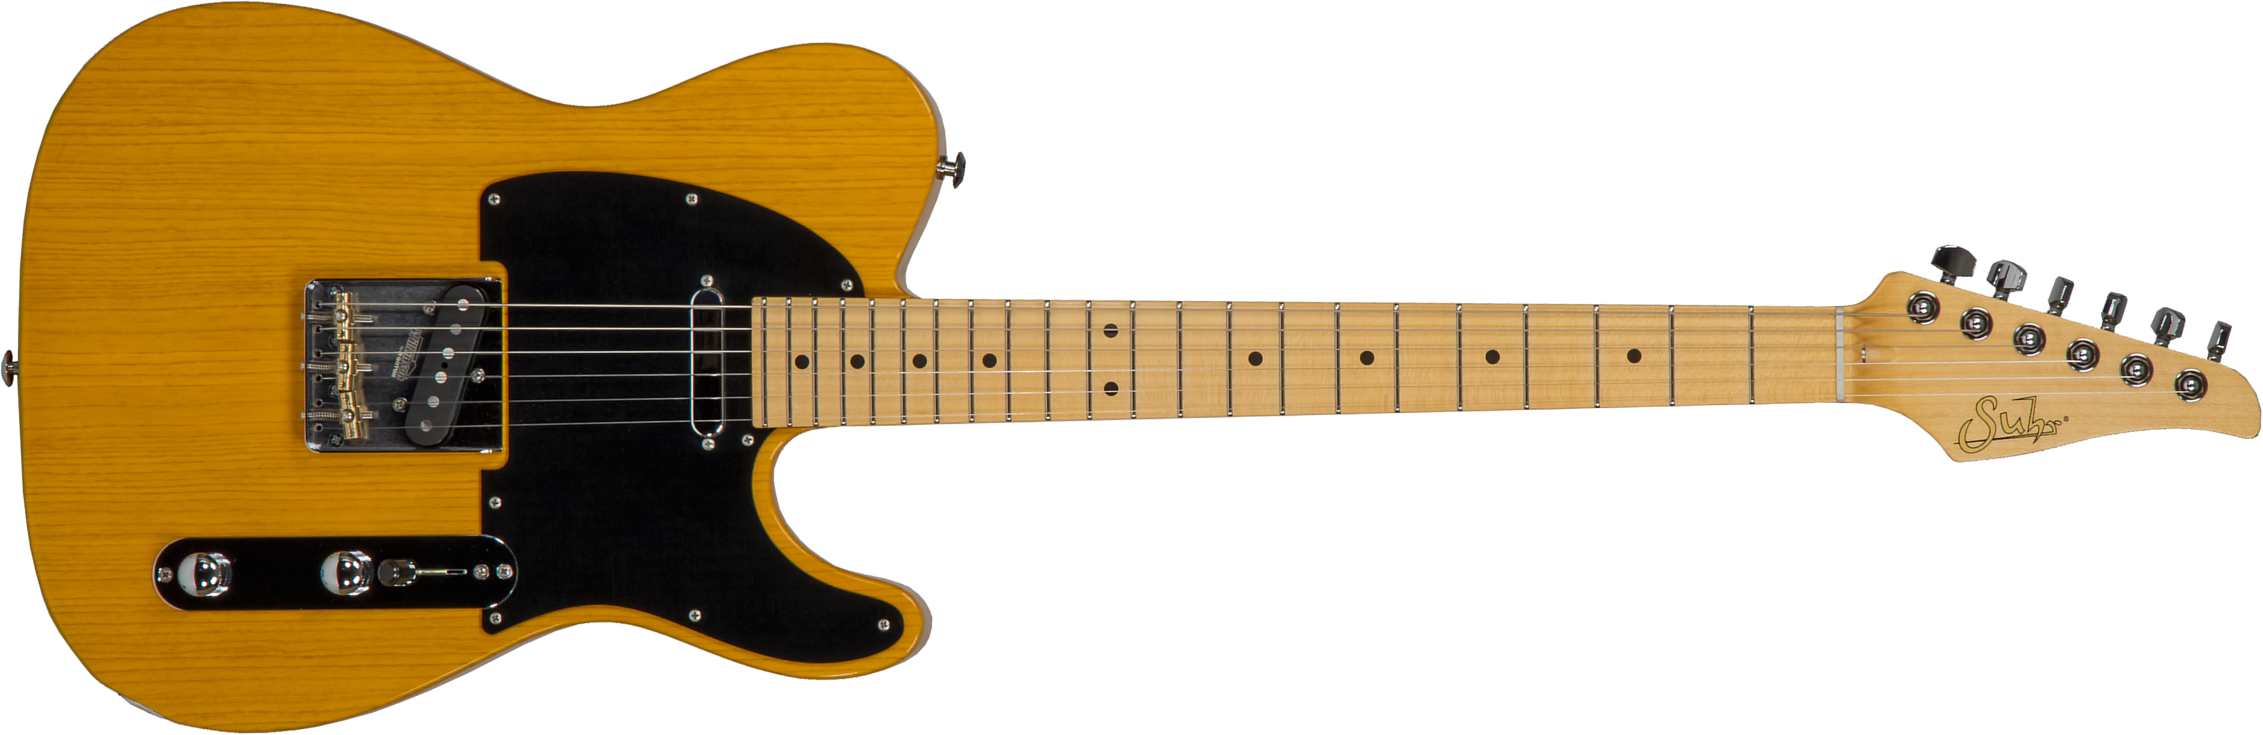 Suhr Classic T Antique 01-cta-0026 2s  Ht Mn #70402 - Light Aging Trans Butterscotch - Tel shape electric guitar - Main picture